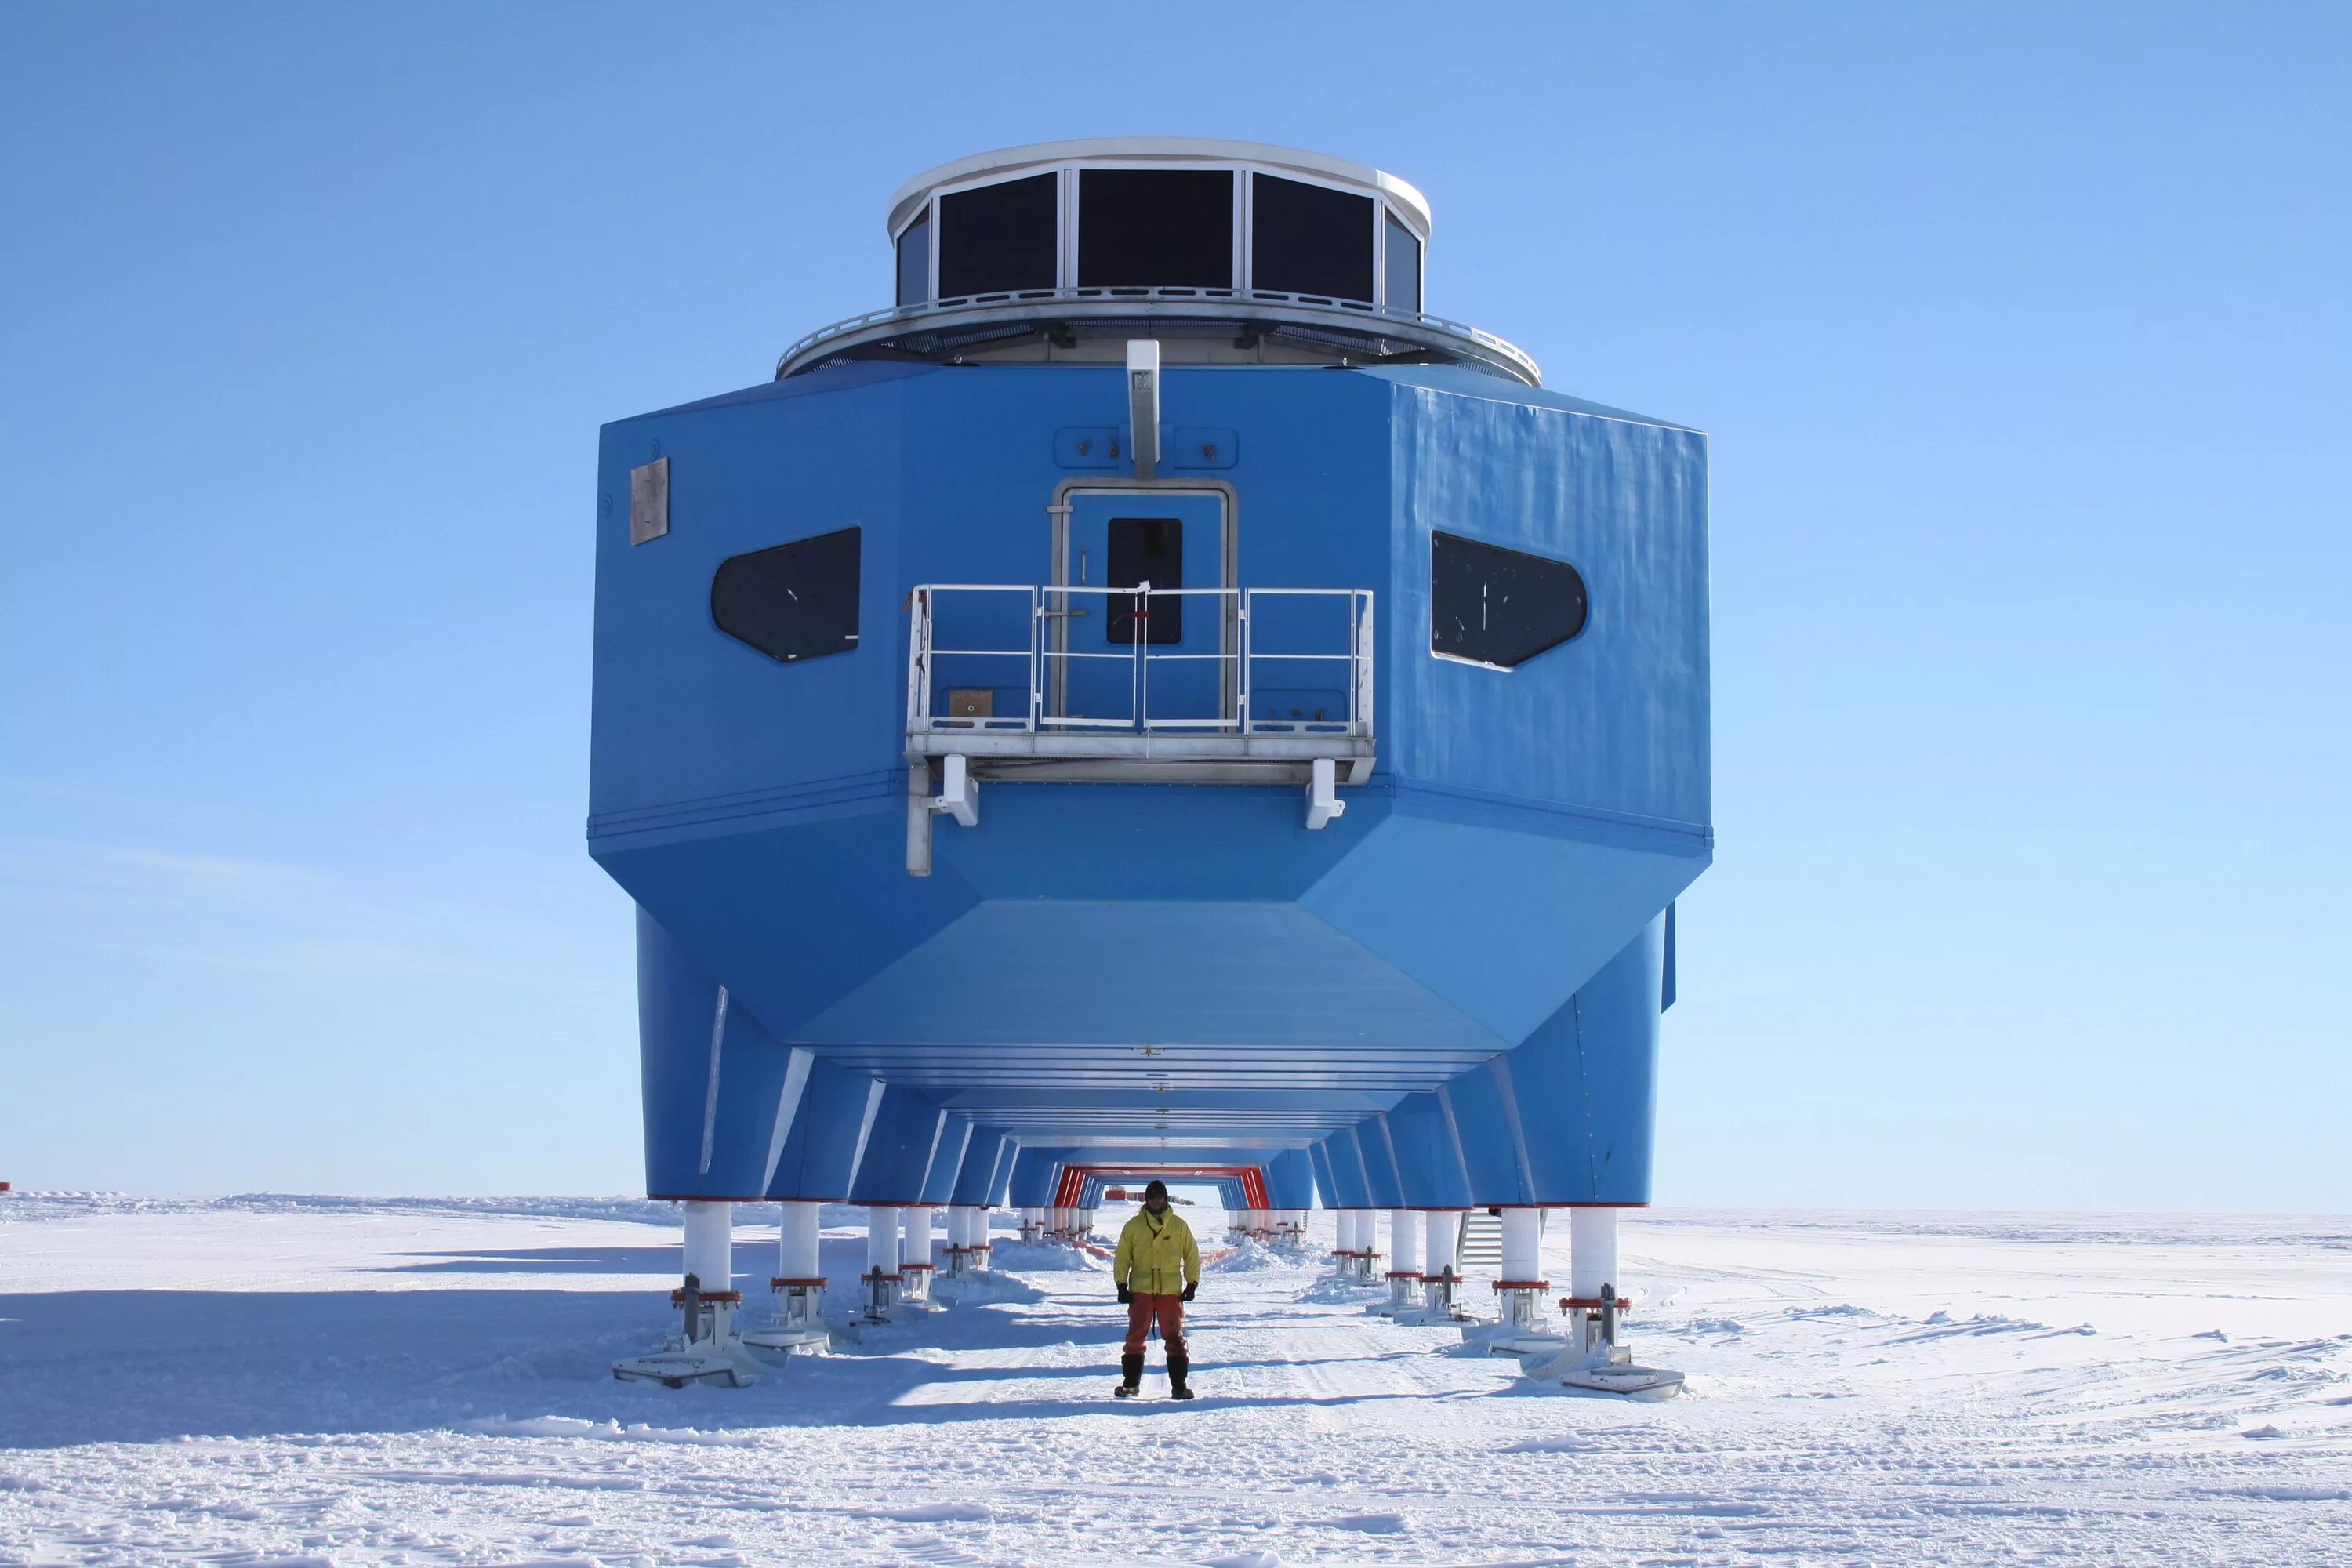 Первые антарктические станции. Британская антарктическая станция Halley vi. Арктическая станция Halley. Станция Халли в Антарктиде. Станция Helley 5 в Антарктиде.